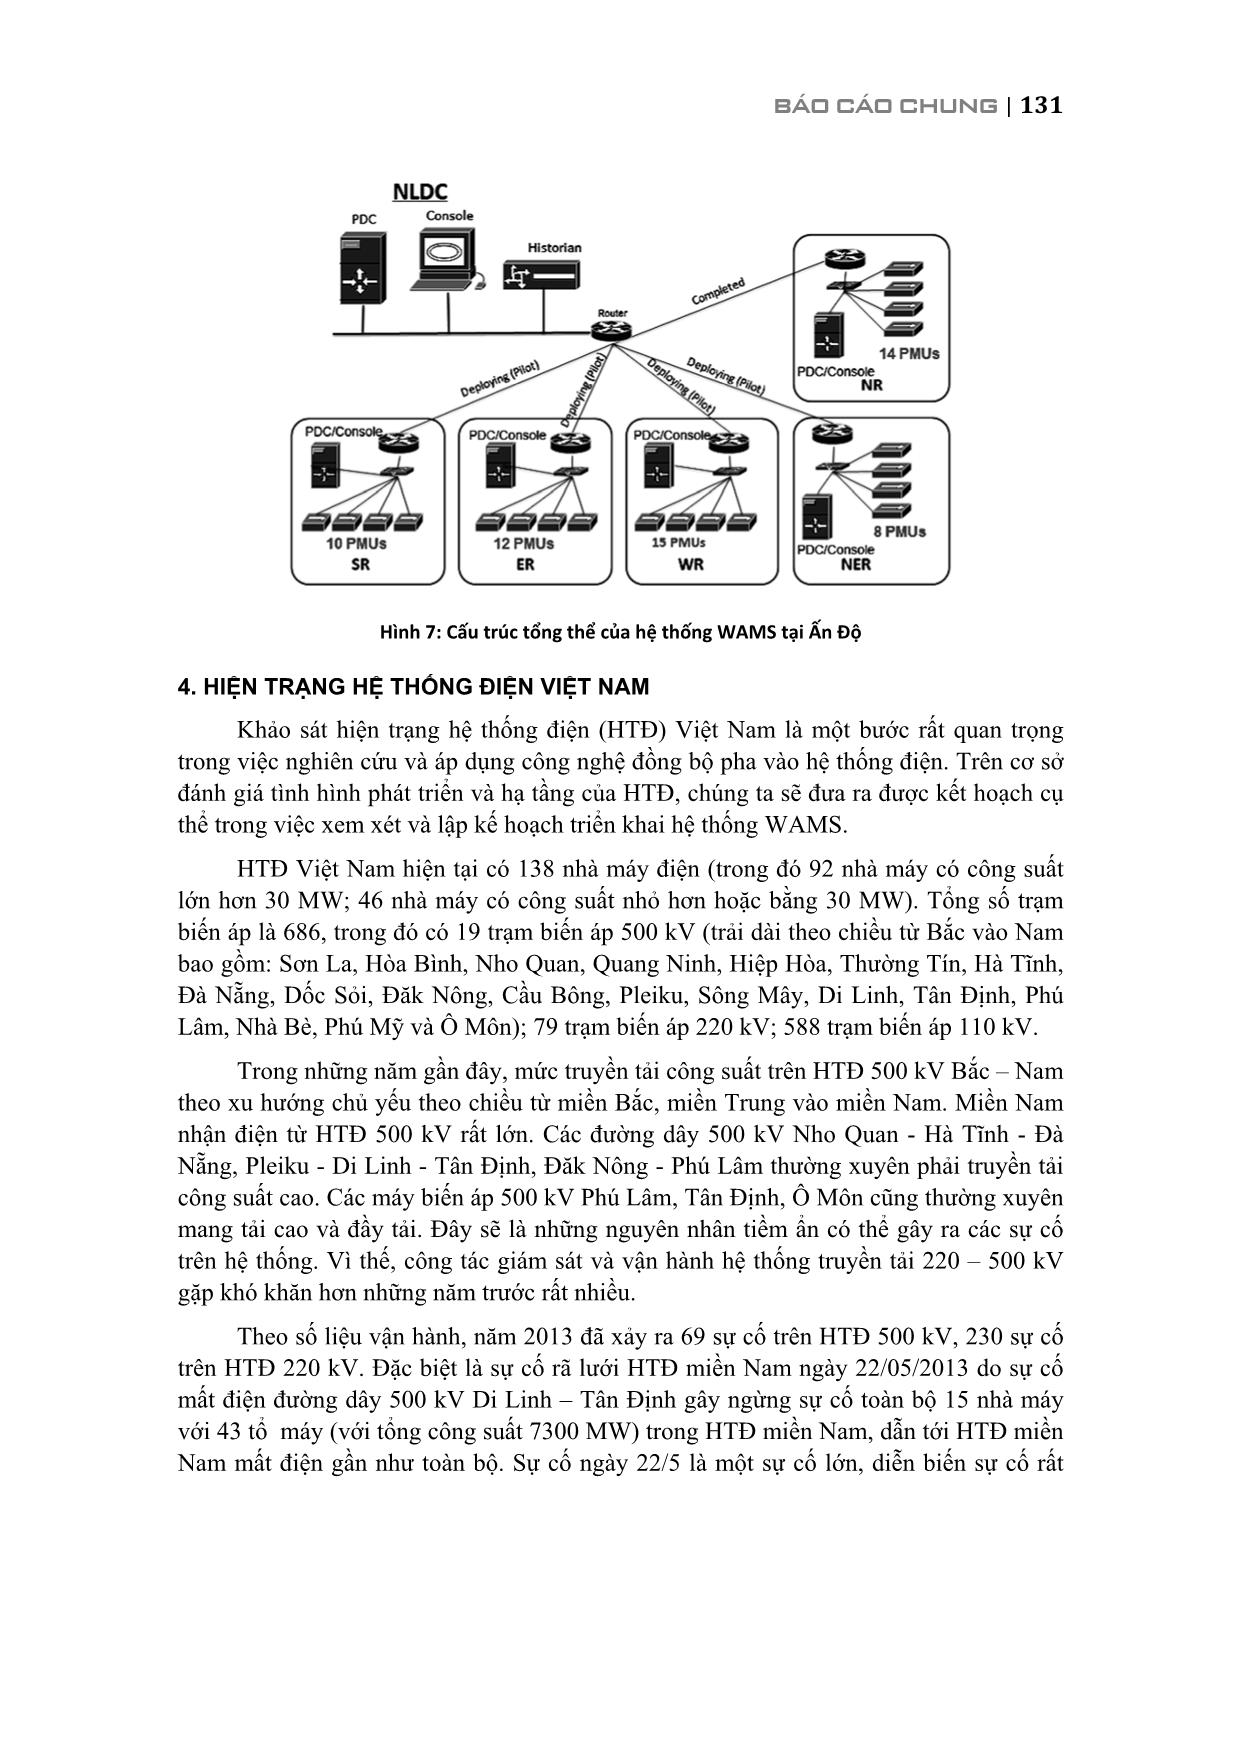 Nghiên cứu về việc xây dựng hệ thống giám sát diện rộng cho hệ thống điện Việt Nam trang 10